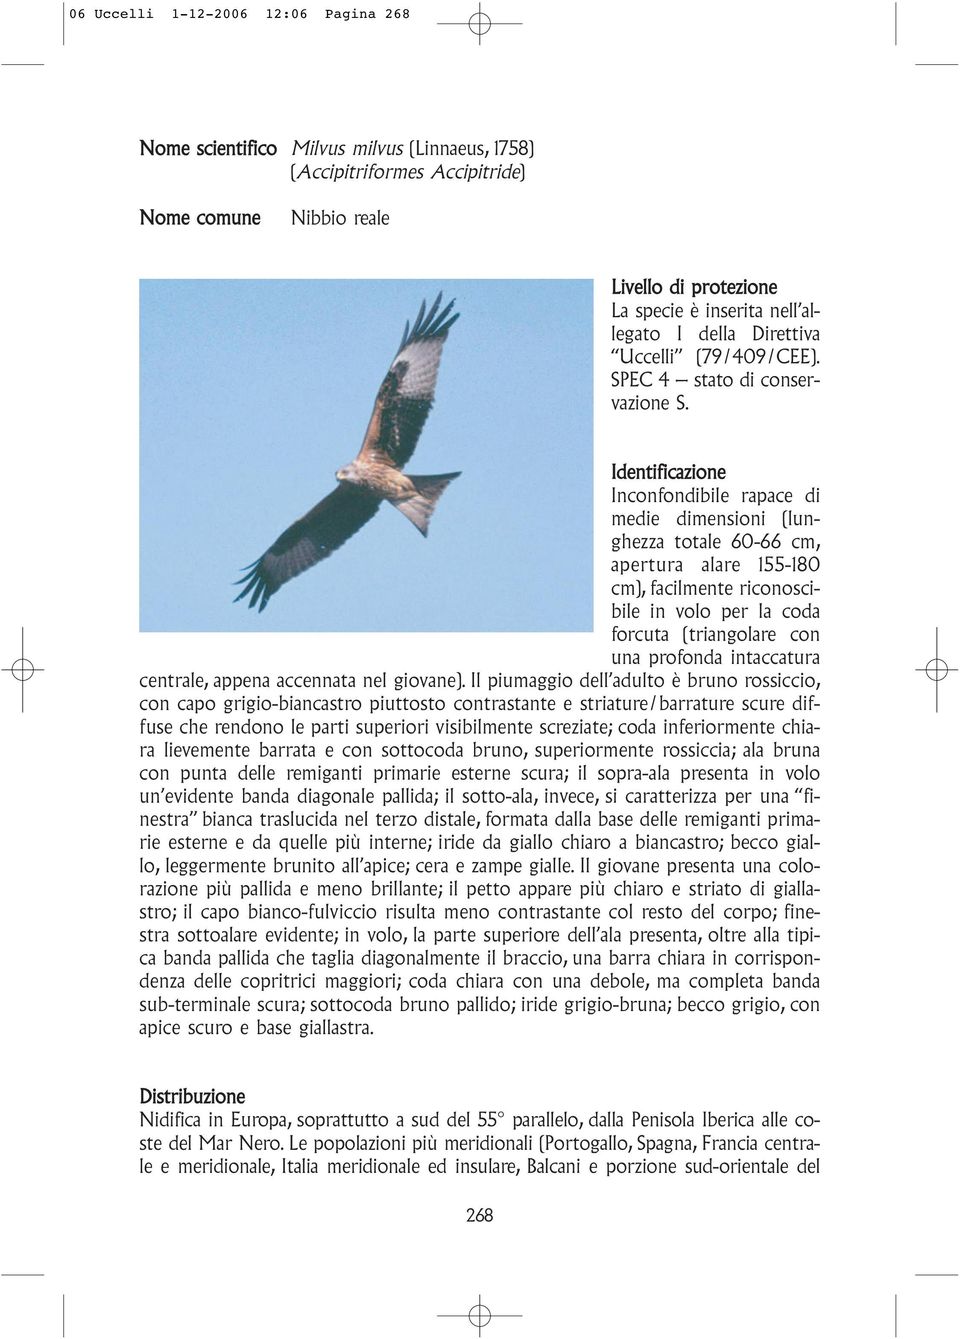 Identificazione Inconfondibile rapace di medie dimensioni (lunghezza totale 60-66 cm, apertura alare 155-180 cm), facilmente riconoscibile in volo per la coda forcuta (triangolare con una profonda